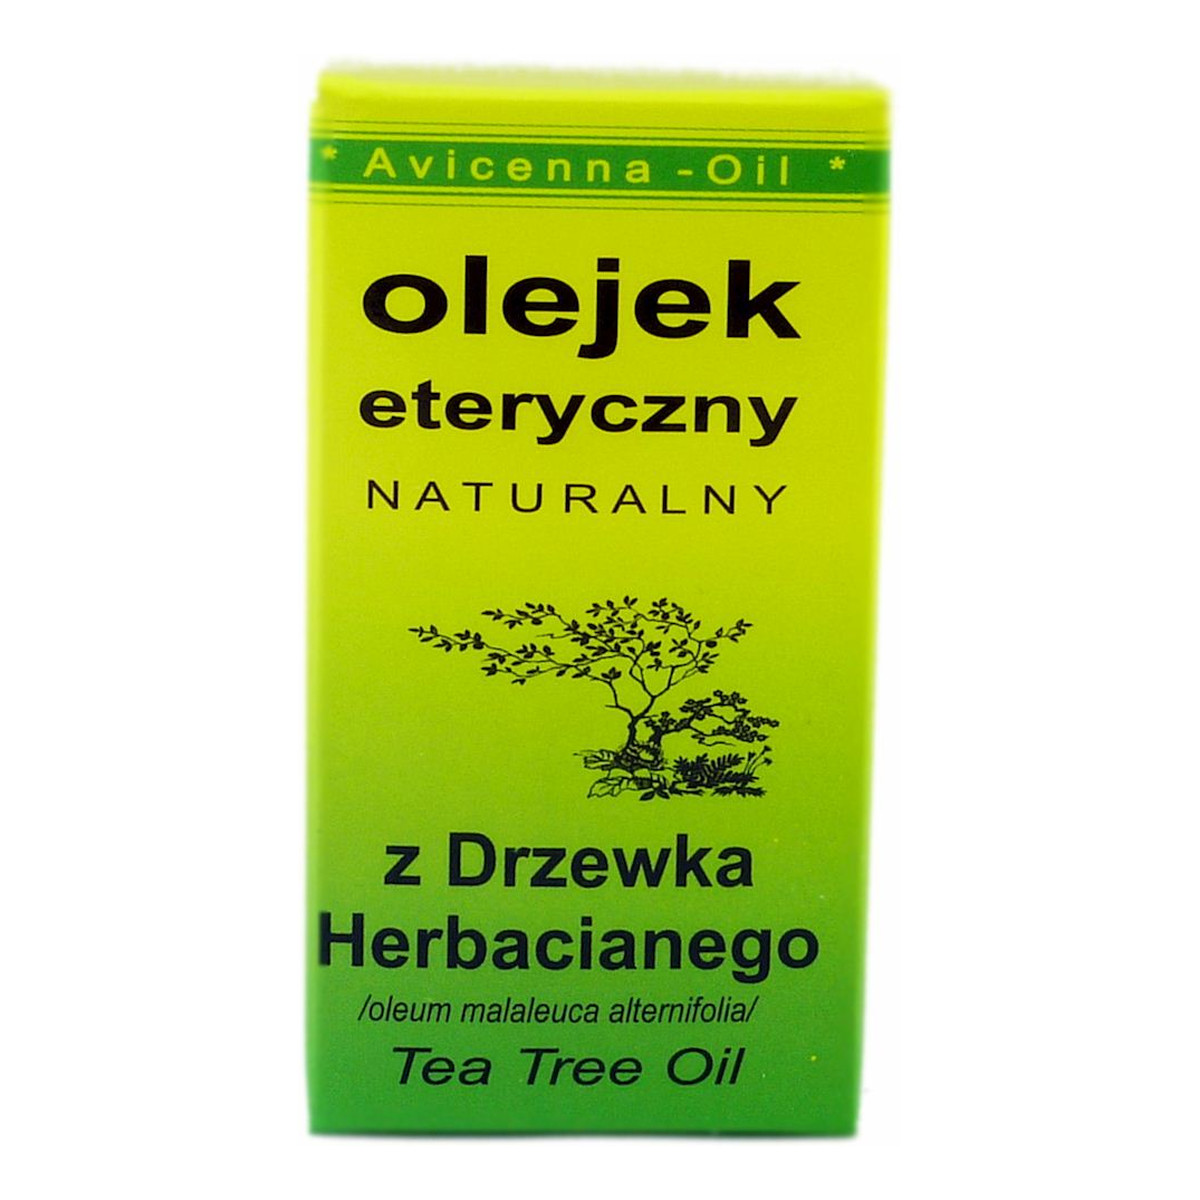 Avicenna-Oil Naturalny Olejek Eteryczny Z Drzewka Herbacianego 7ml